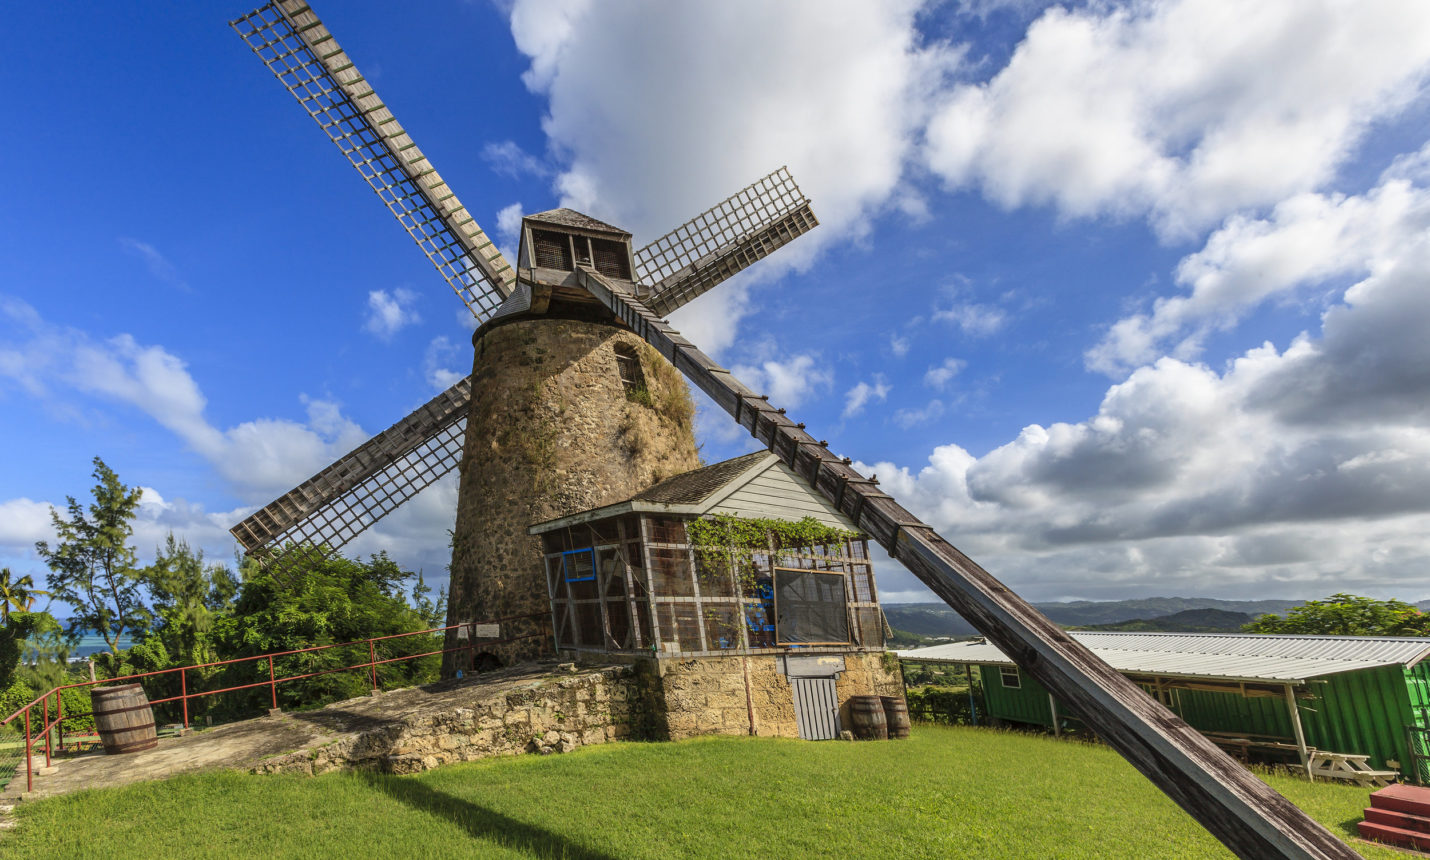 Morgan Lewis Windmill